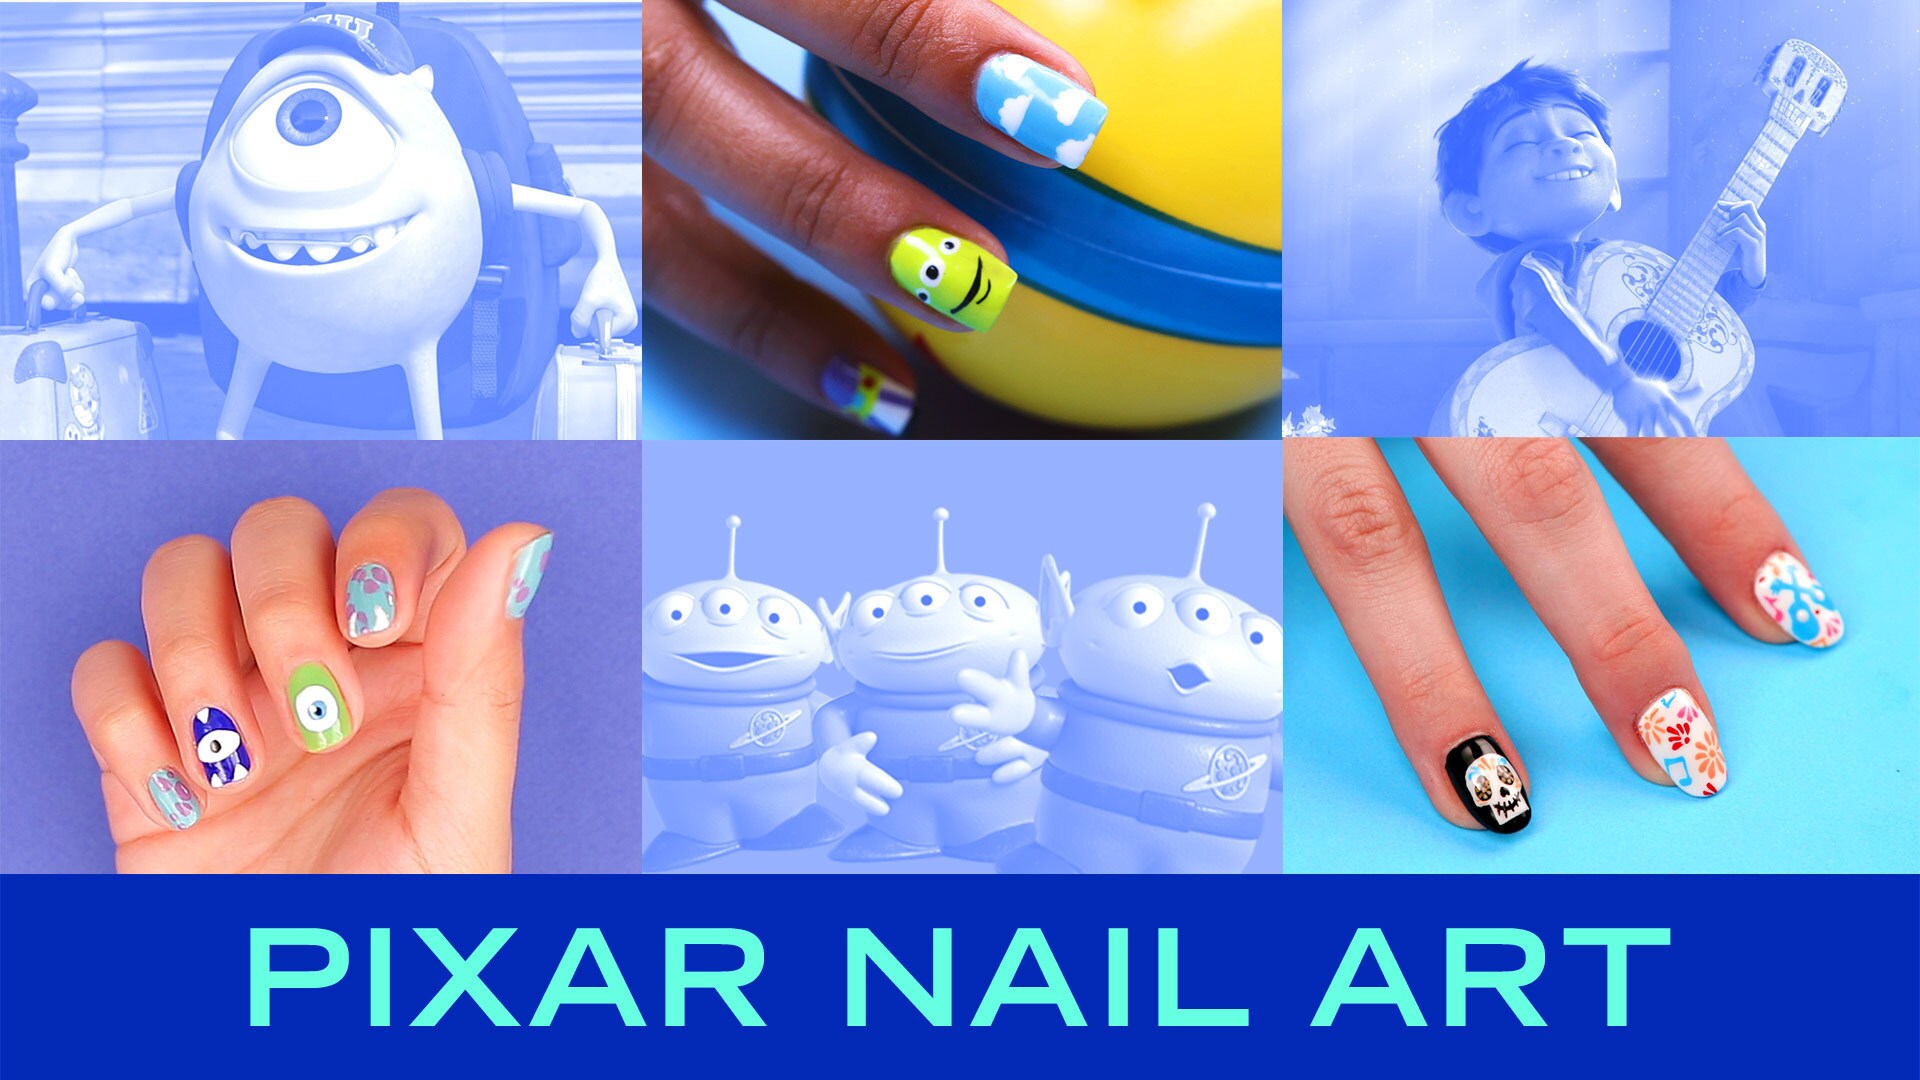 3 Disney•Pixar Nail Art Ideas | TIPS by Disney Style